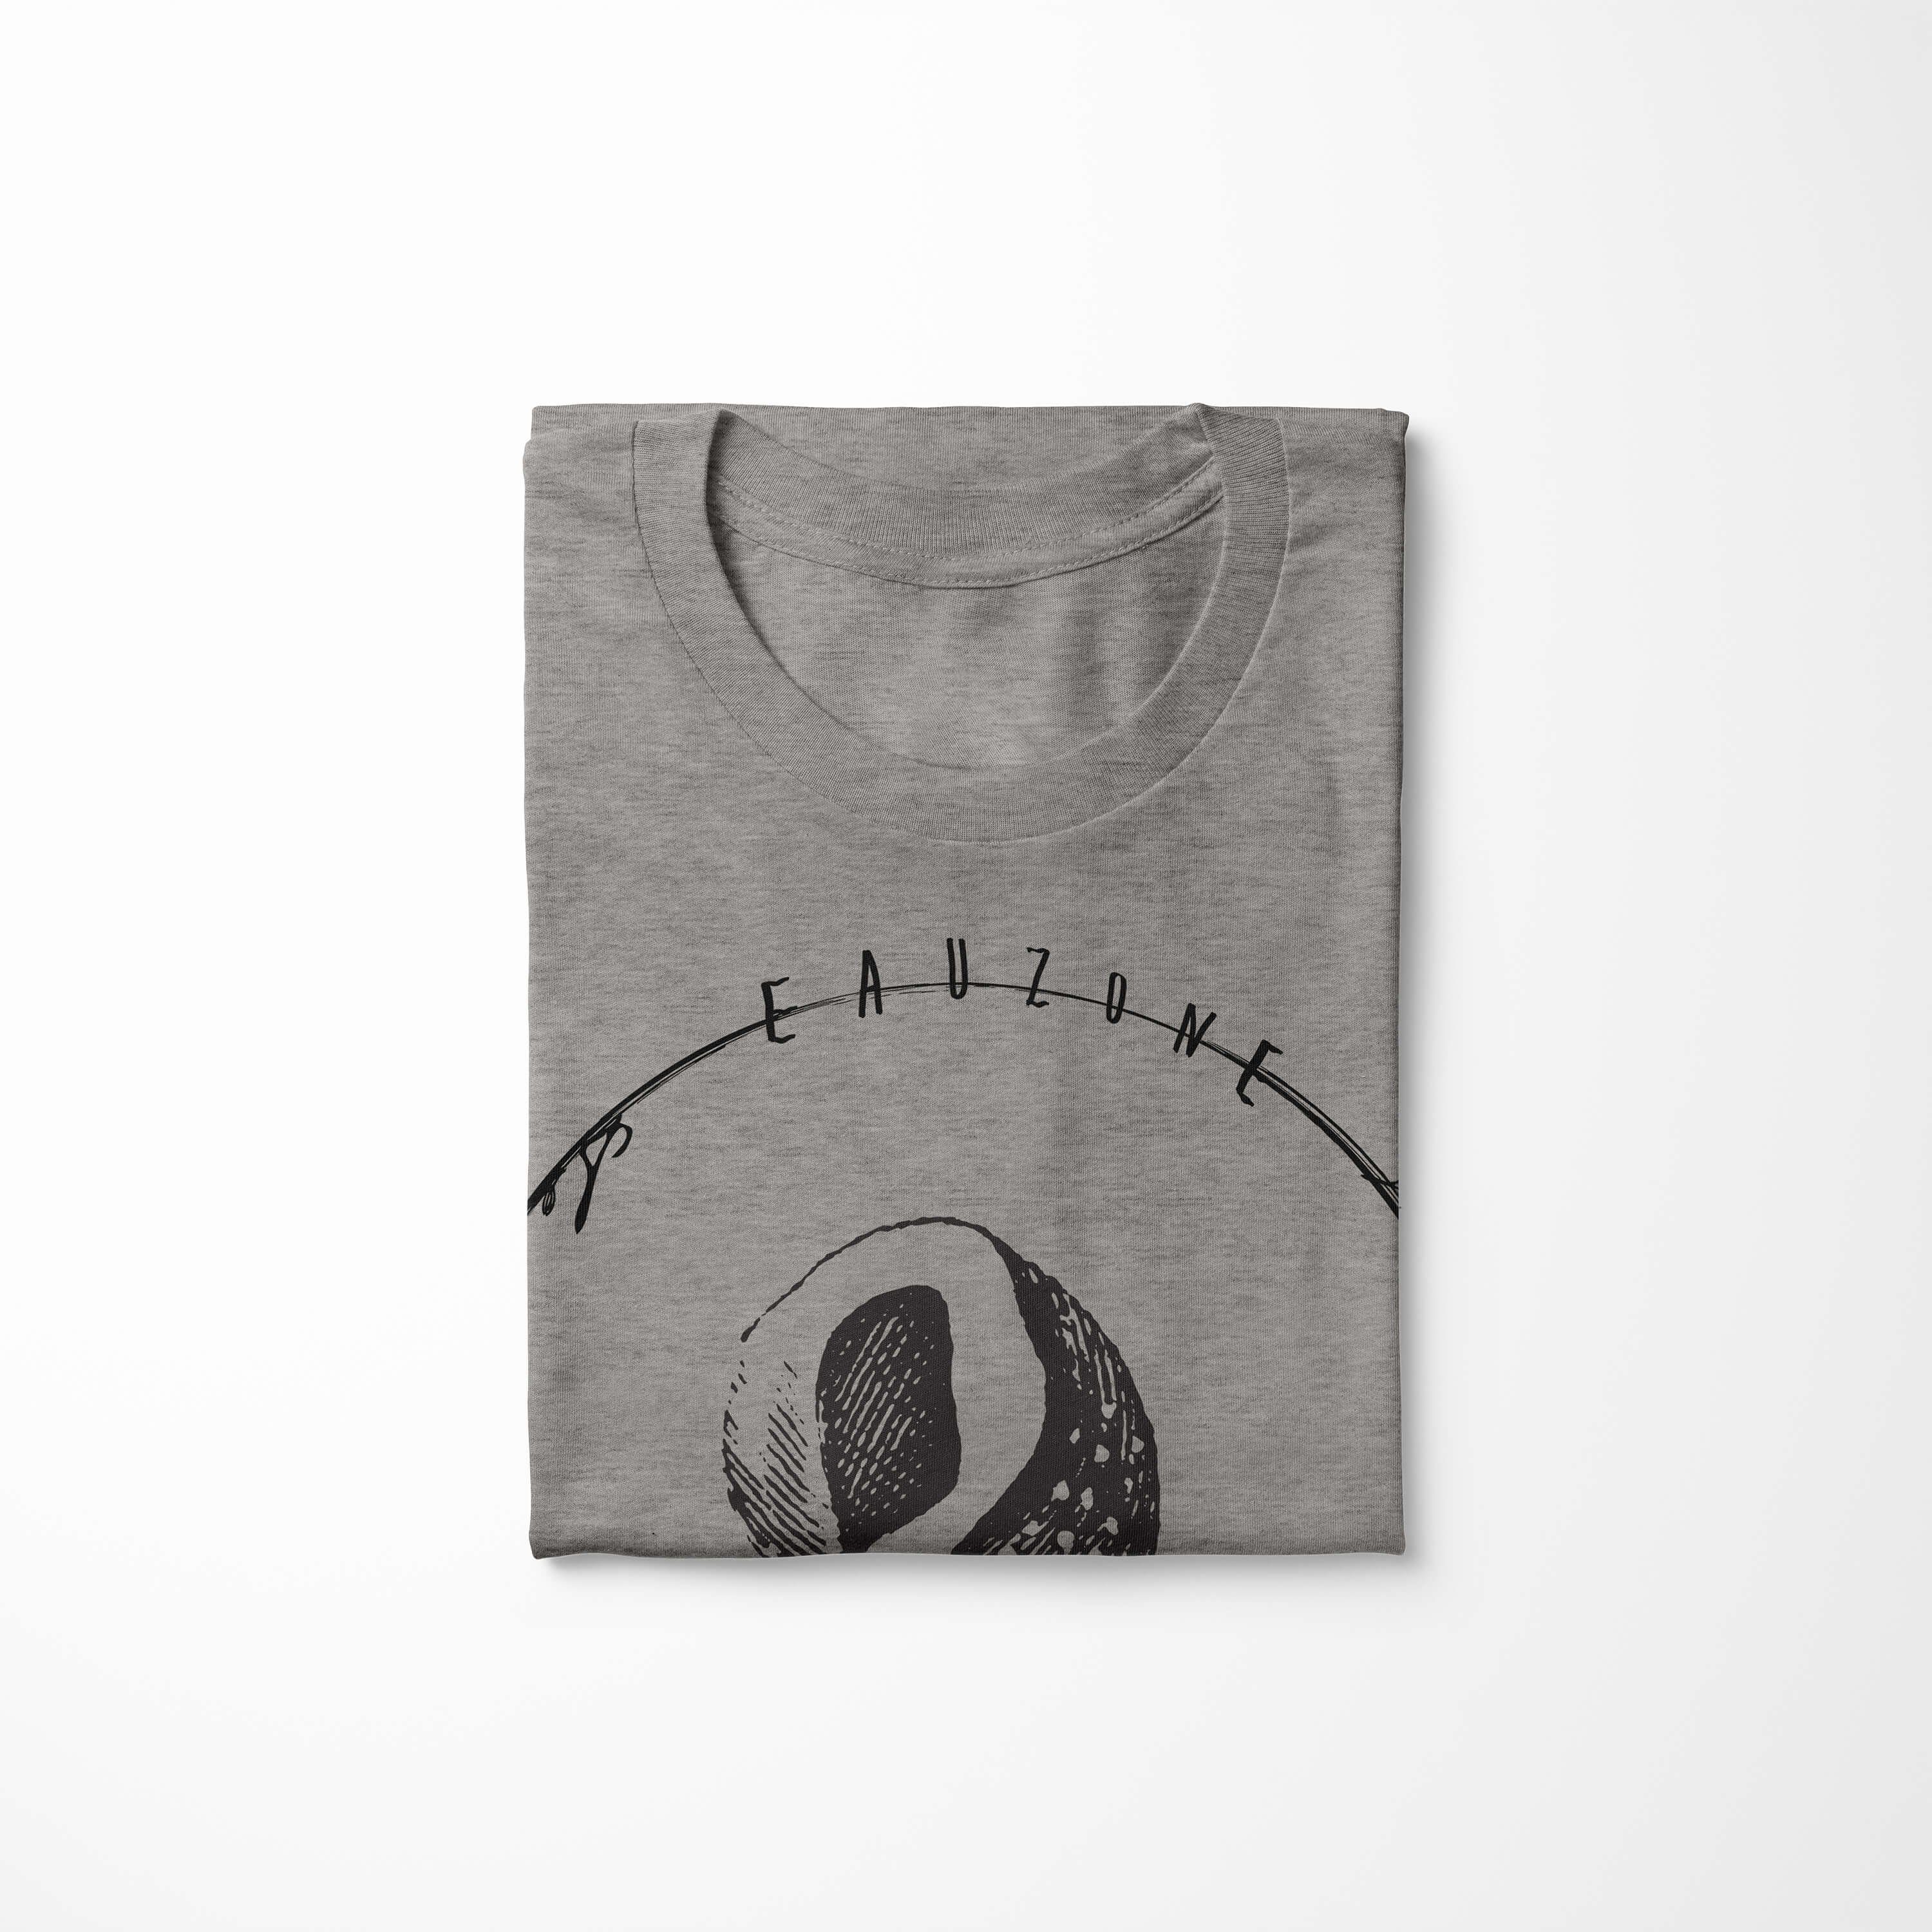 Sea Tiefsee / sportlicher Creatures, Ash und Schnitt 006 Fische Sinus T-Shirt Serie: Struktur Sea Art T-Shirt - feine